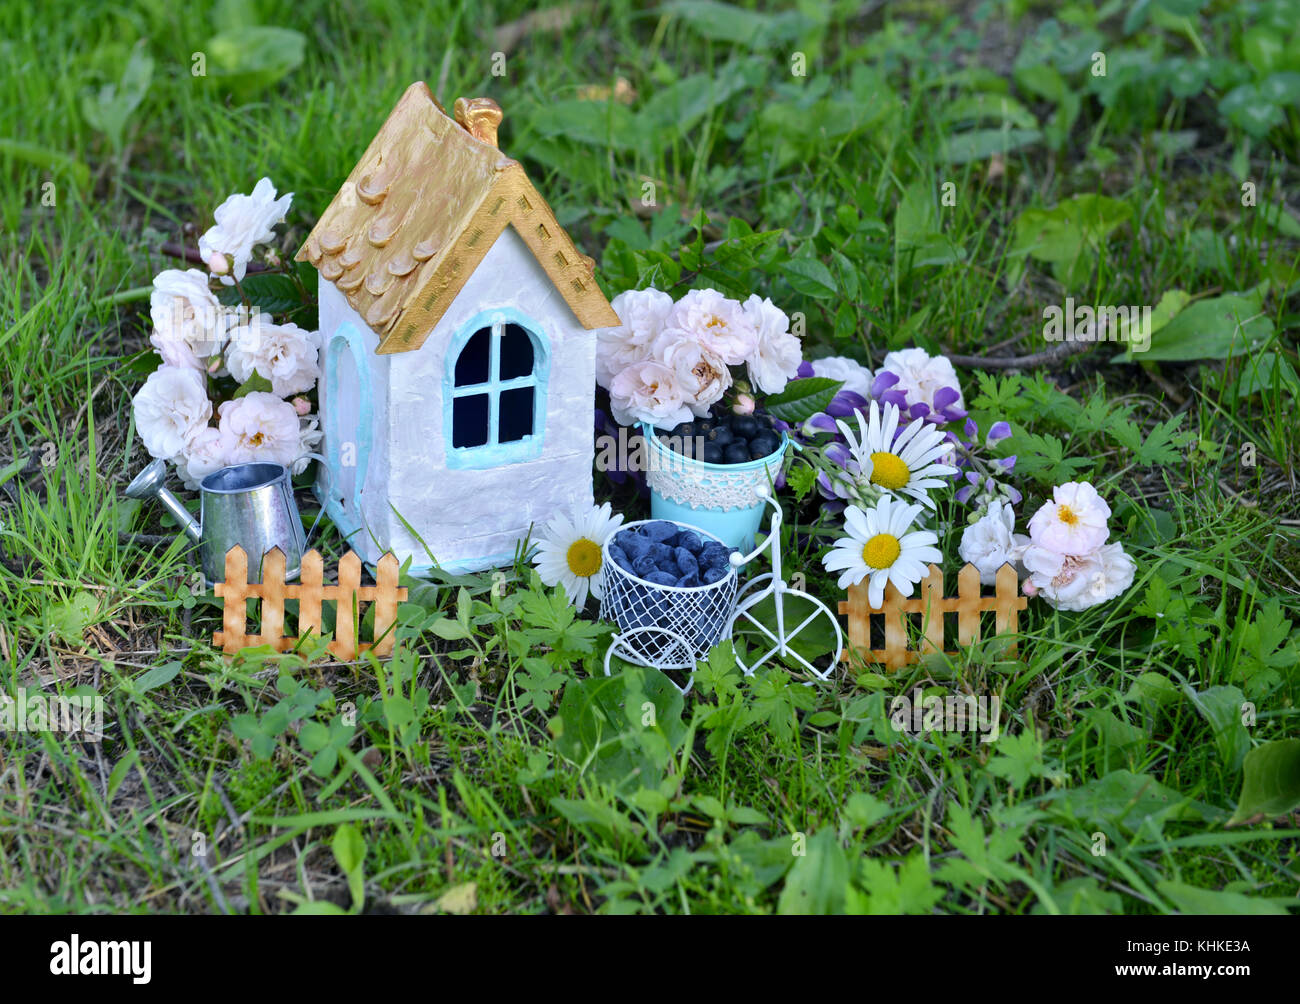 Kleines Weisses Haus Mit Rosen Und Ganseblumchen In Der Garten Stockfotografie Alamy